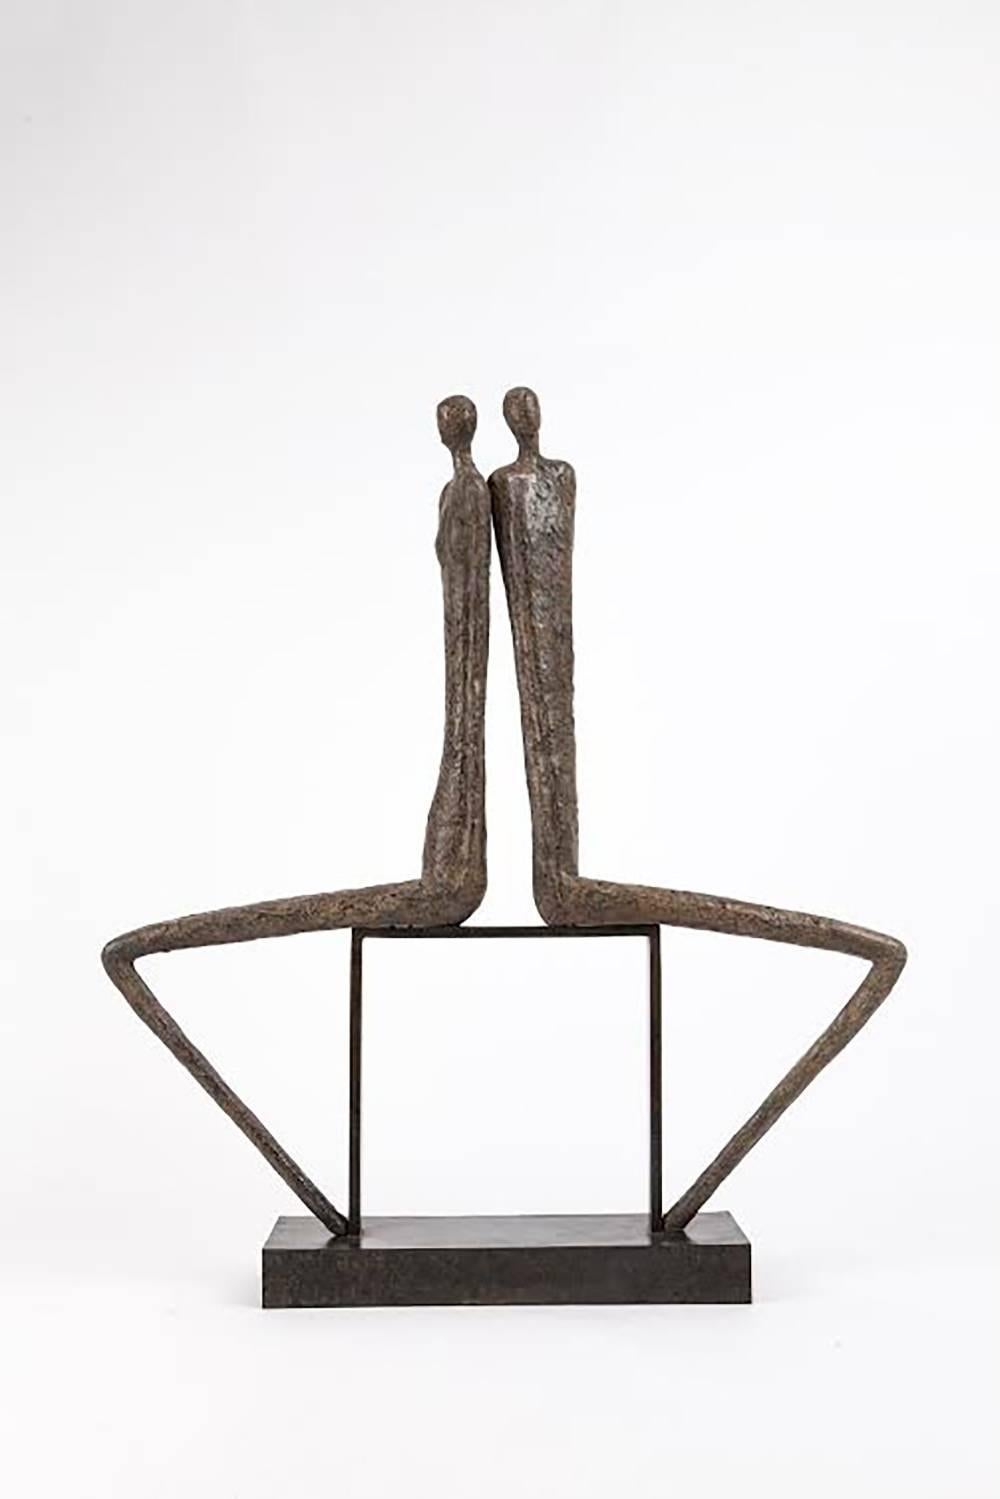 Chantal Lacout Figurative Sculpture - Aurore et Crépuscule, bronze sculpture